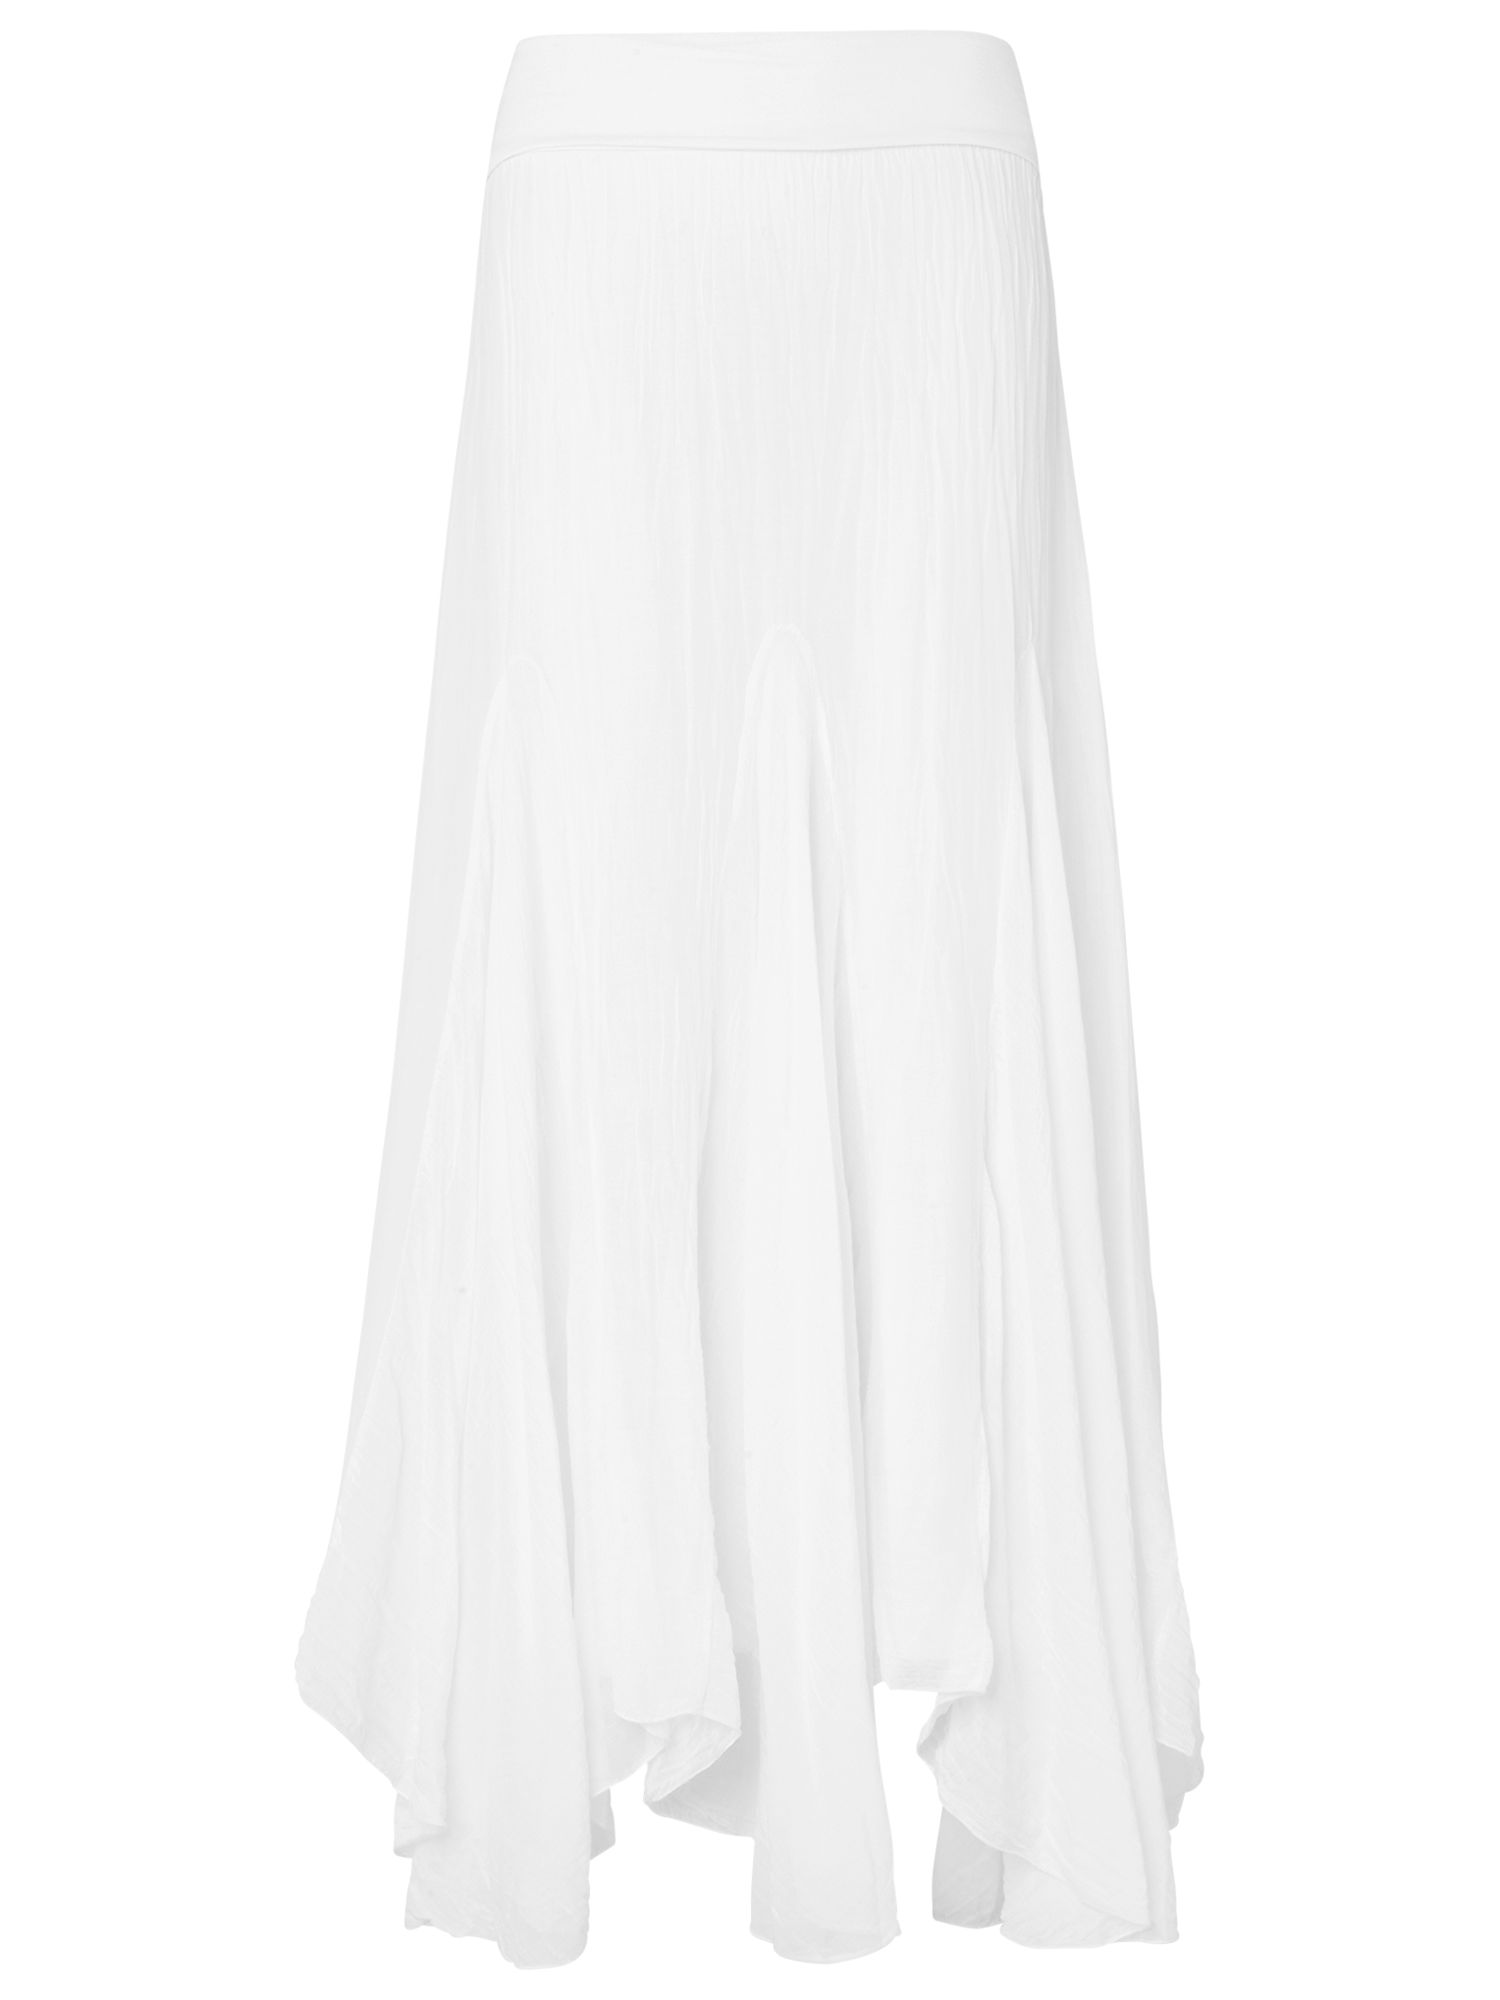 Phase Eight Anastasia Maxi Skirt, White